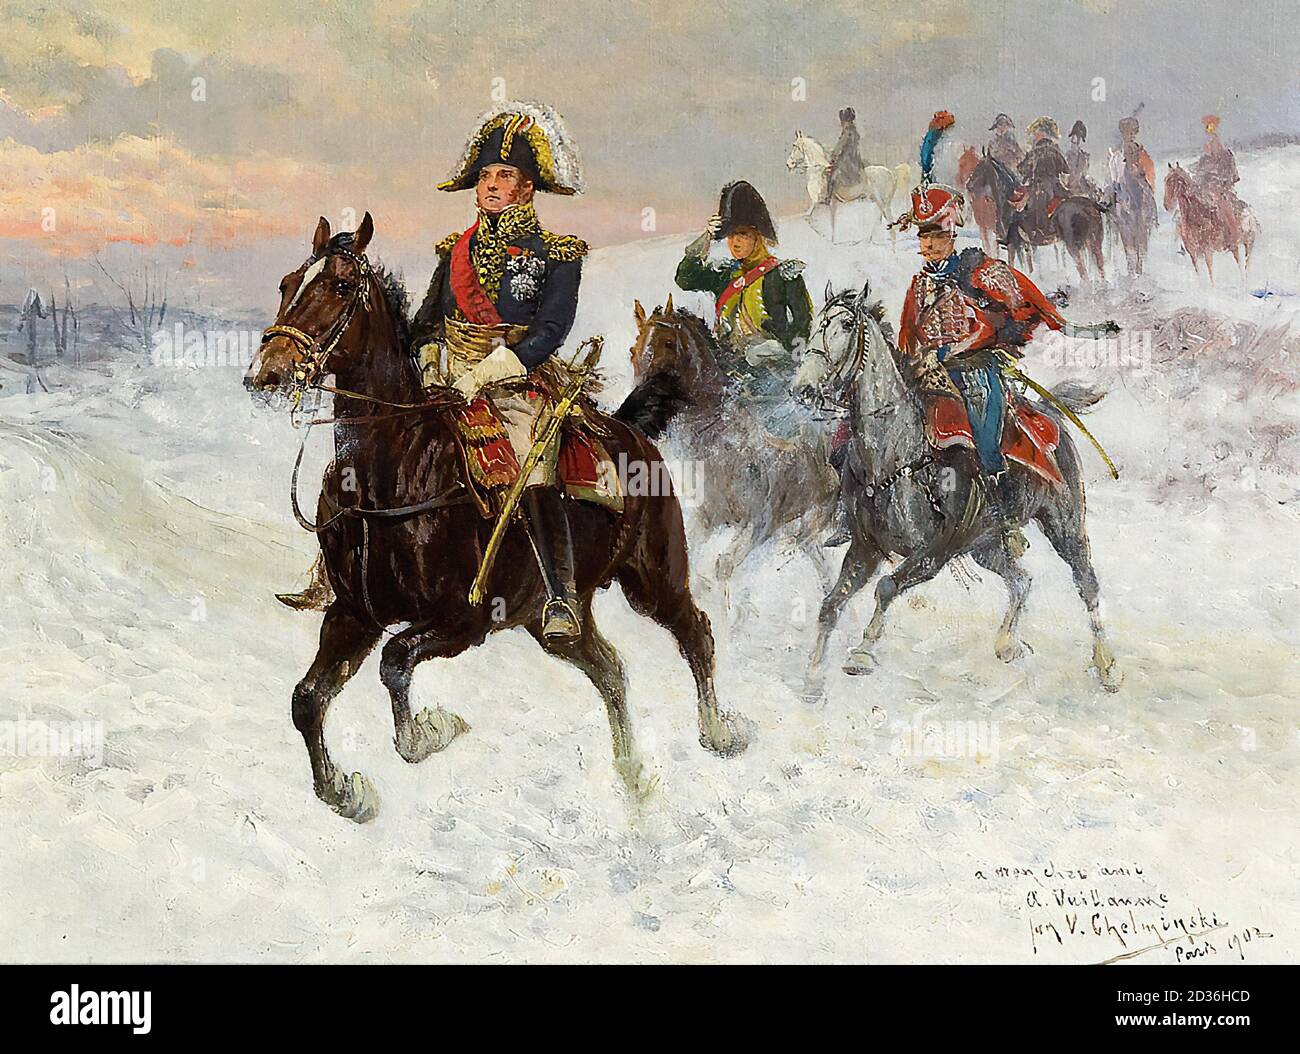 Chelminski Jan Van - Maresciallo Ney e Napoleone con i soldati Durante l'invasione della Russia - Scuola Polacca - Foto Stock